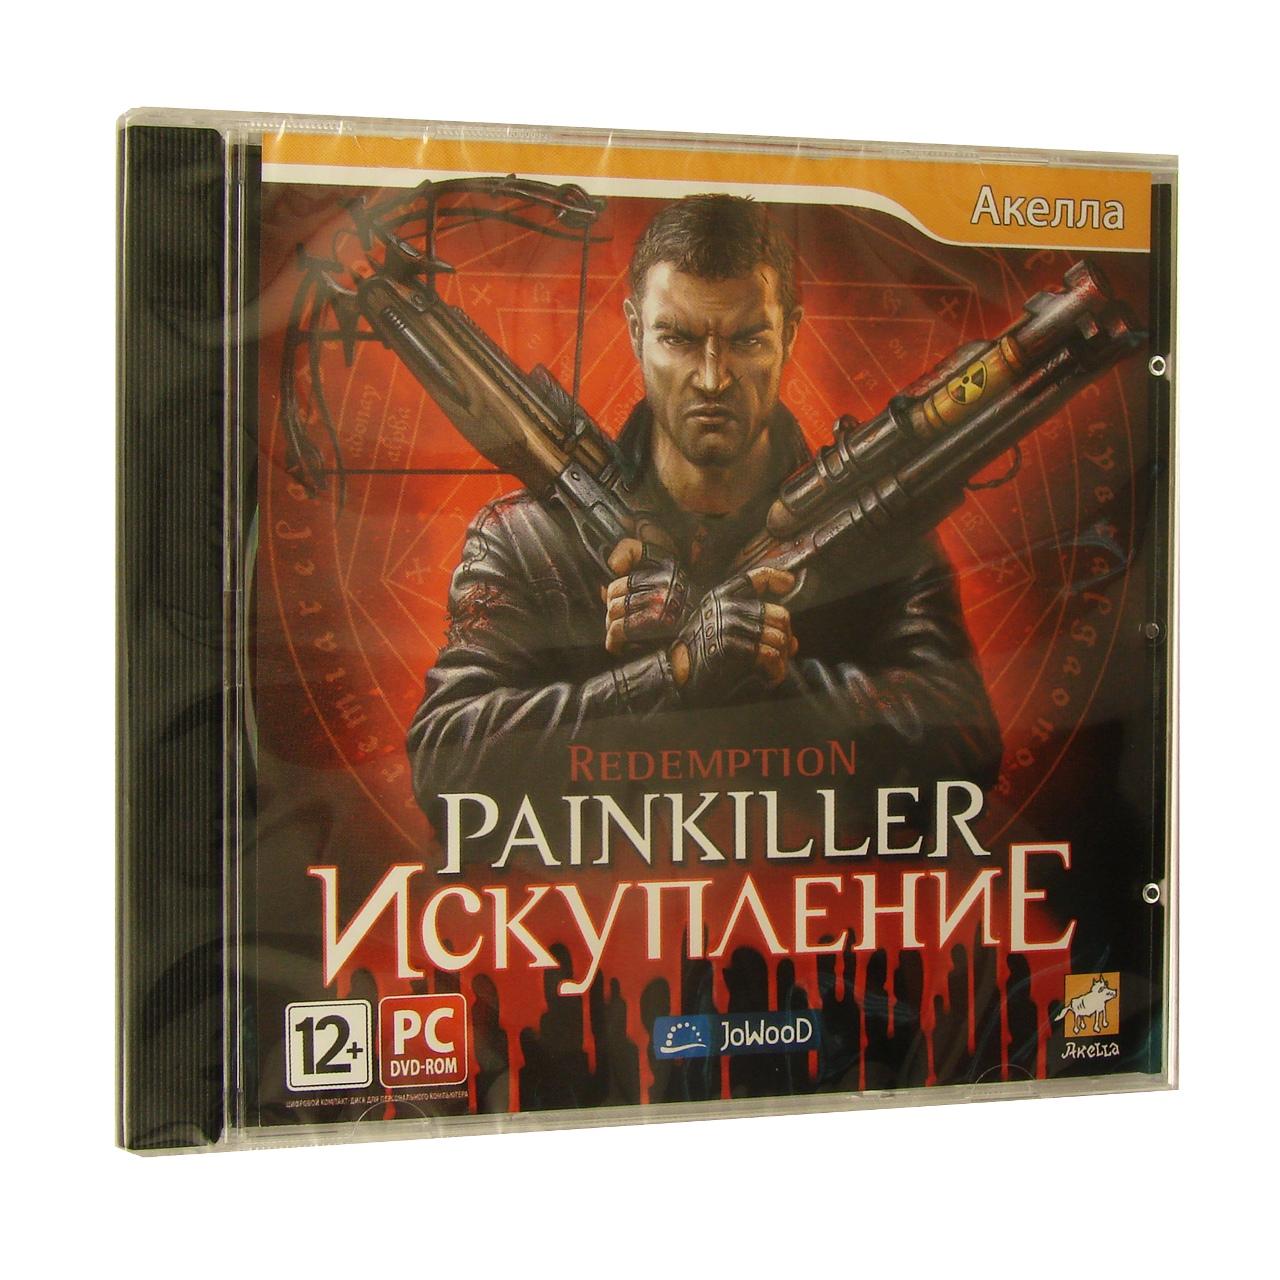 Компьютерный компакт-диск Painkiller : Искупление (ПК), фирма "Акелла", 1DVD